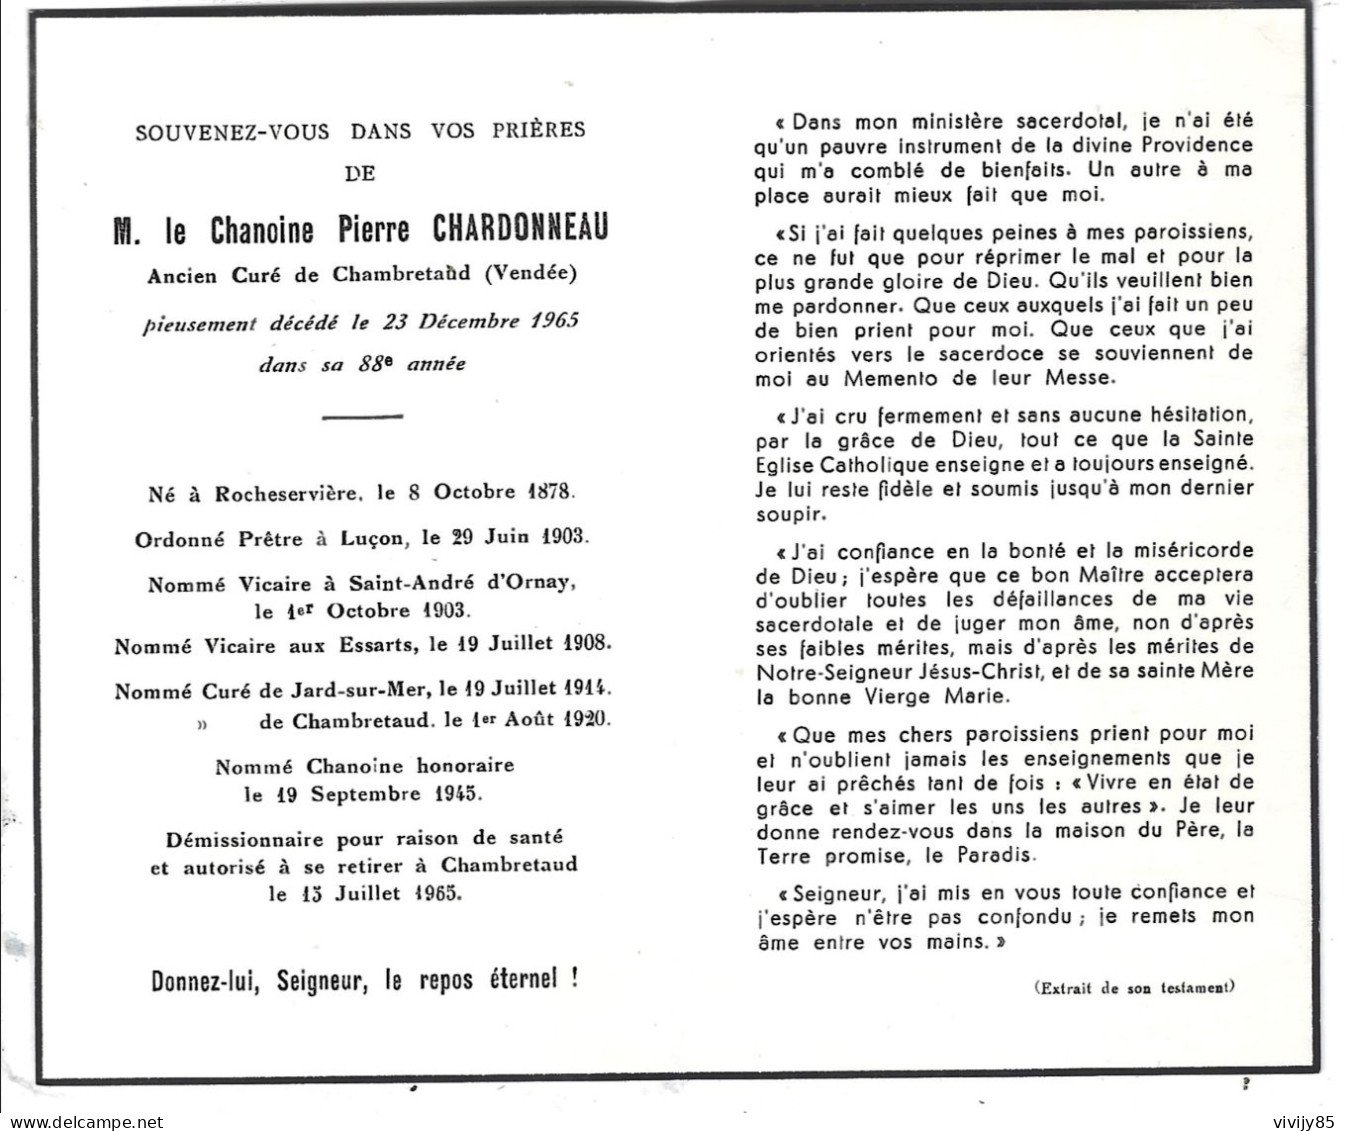 85-CHAMBRFETAUD- Faire Part Décès Chanoine Pierre CHARDONNEAU - ROCHESERVIERE-LUçON-ESSATS-JARD/MER-St A.D'ORNAY - Décès